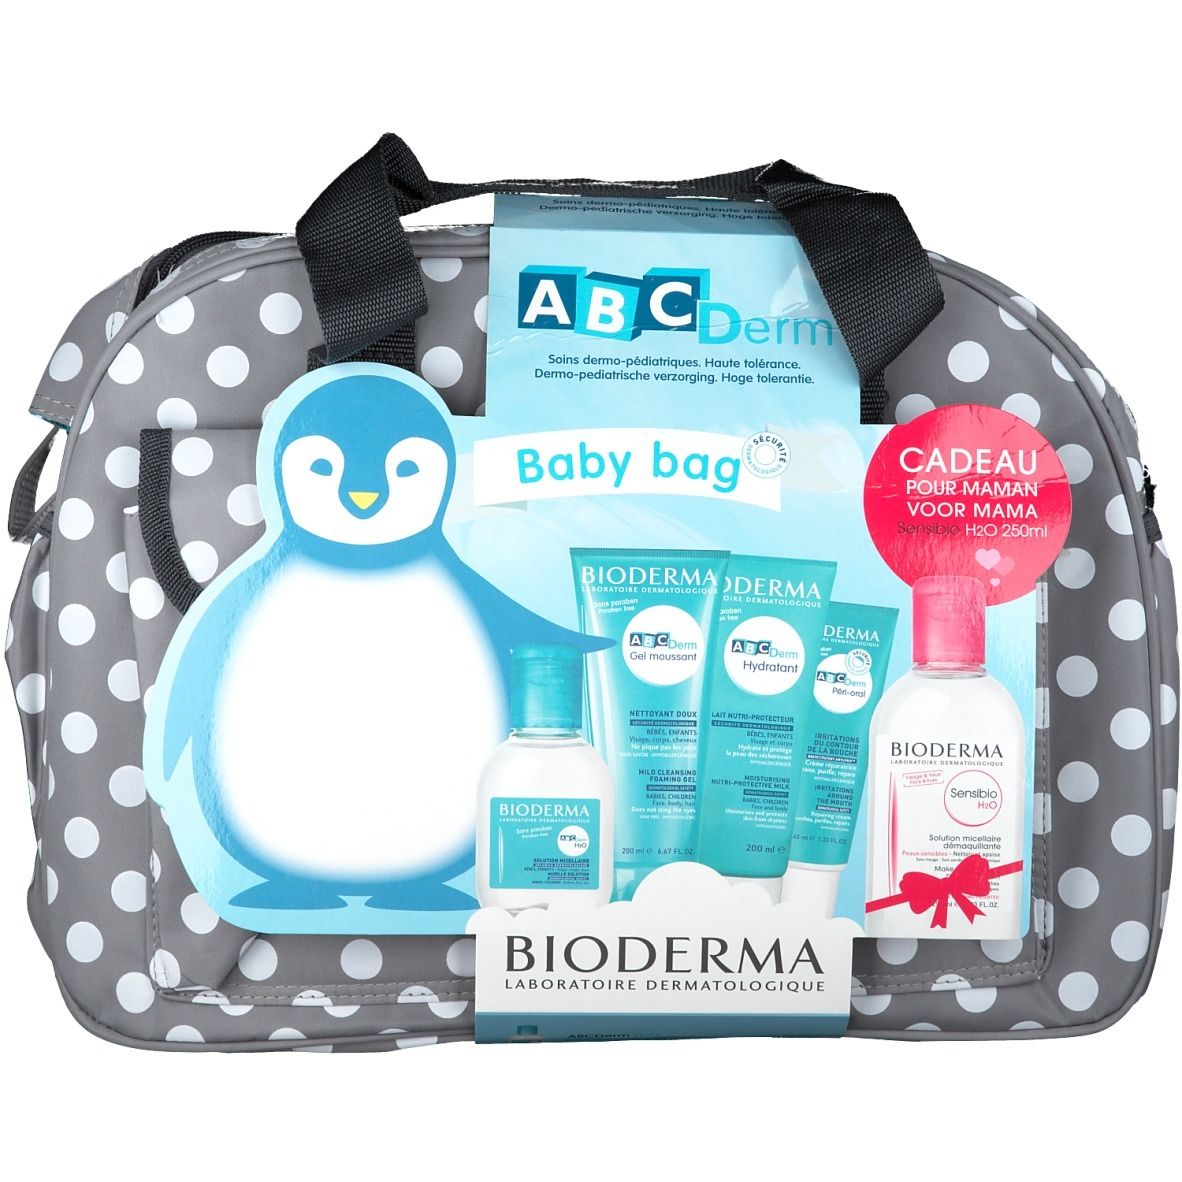 ABCDerm H2O  Eau micellaire, nettoyant pour la peau délicate des bébés et  des enfants